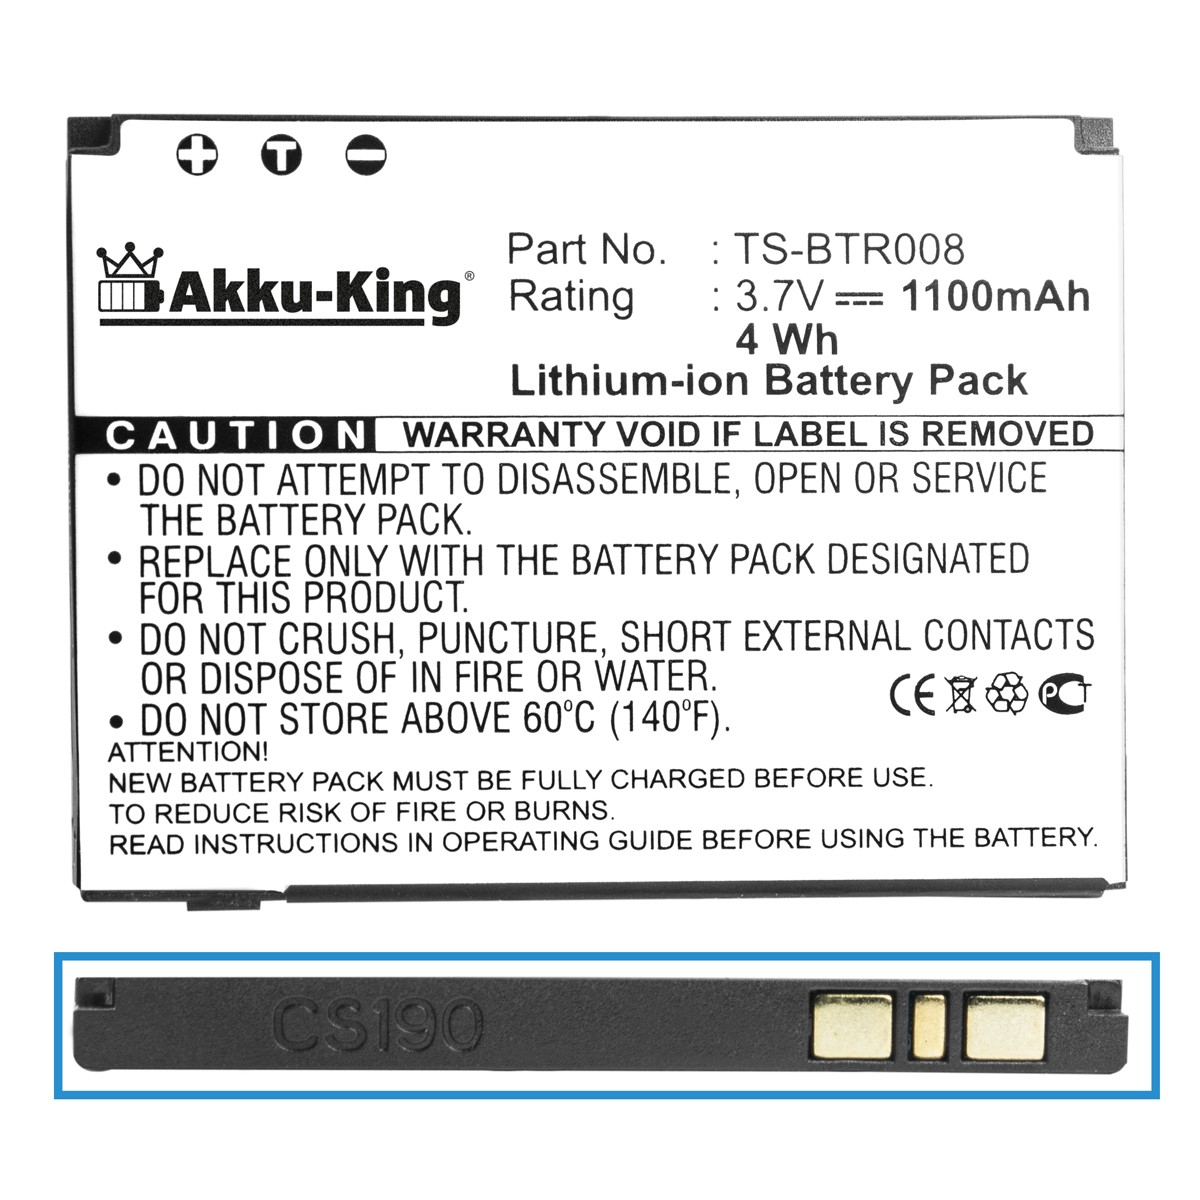 AKKU-KING Akku kompatibel mit Handy-Akku, Volt, 3.7 1100mAh Toshiba TS-BTR008 Li-Ion